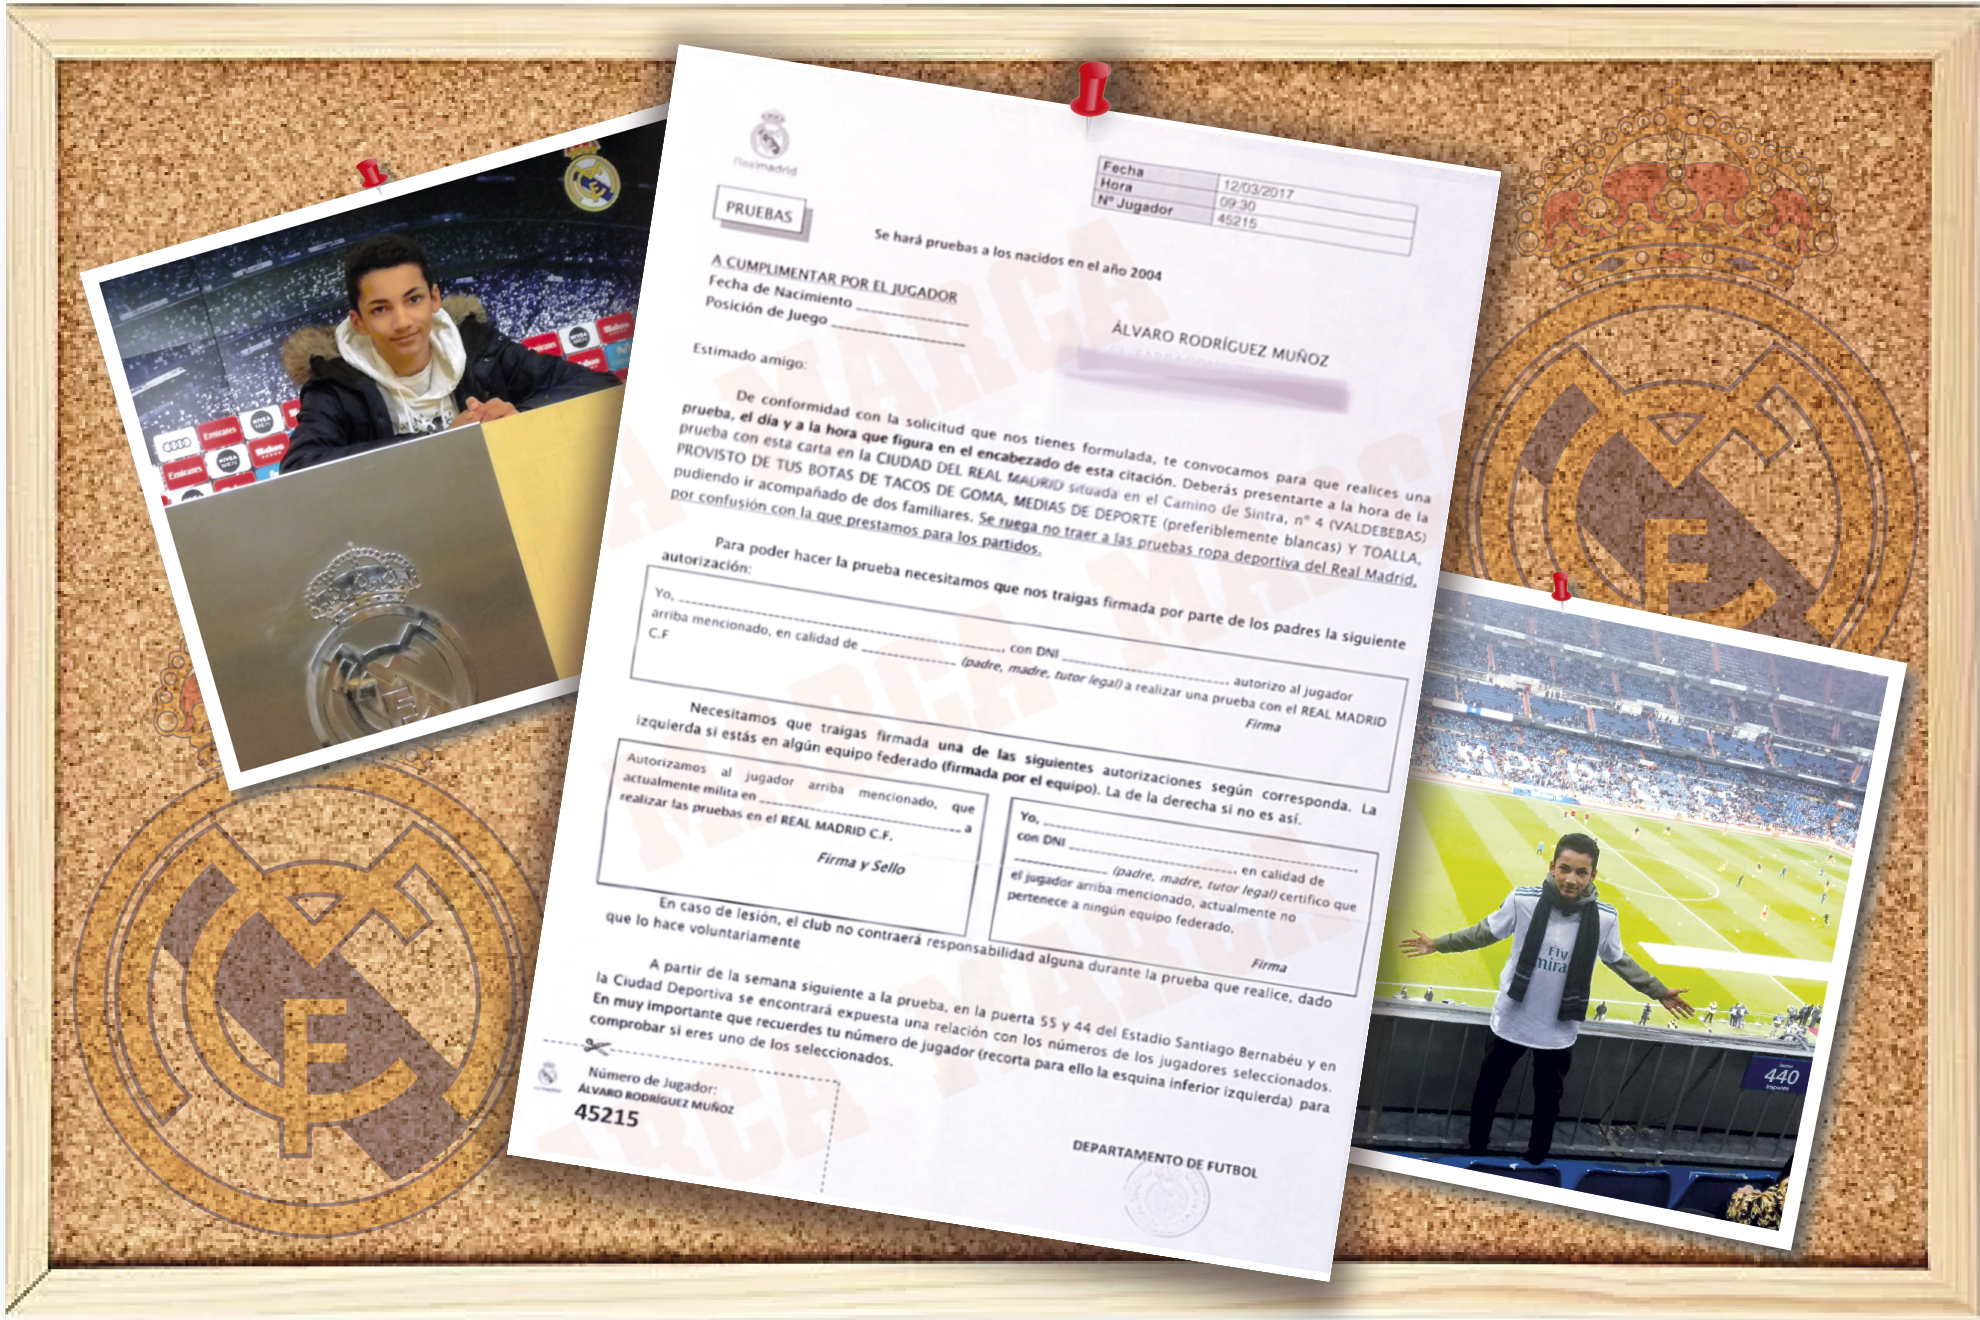 La carta de la primera 'convocatoria' de lvaro: "No vengas con ropa del Real Madrid"